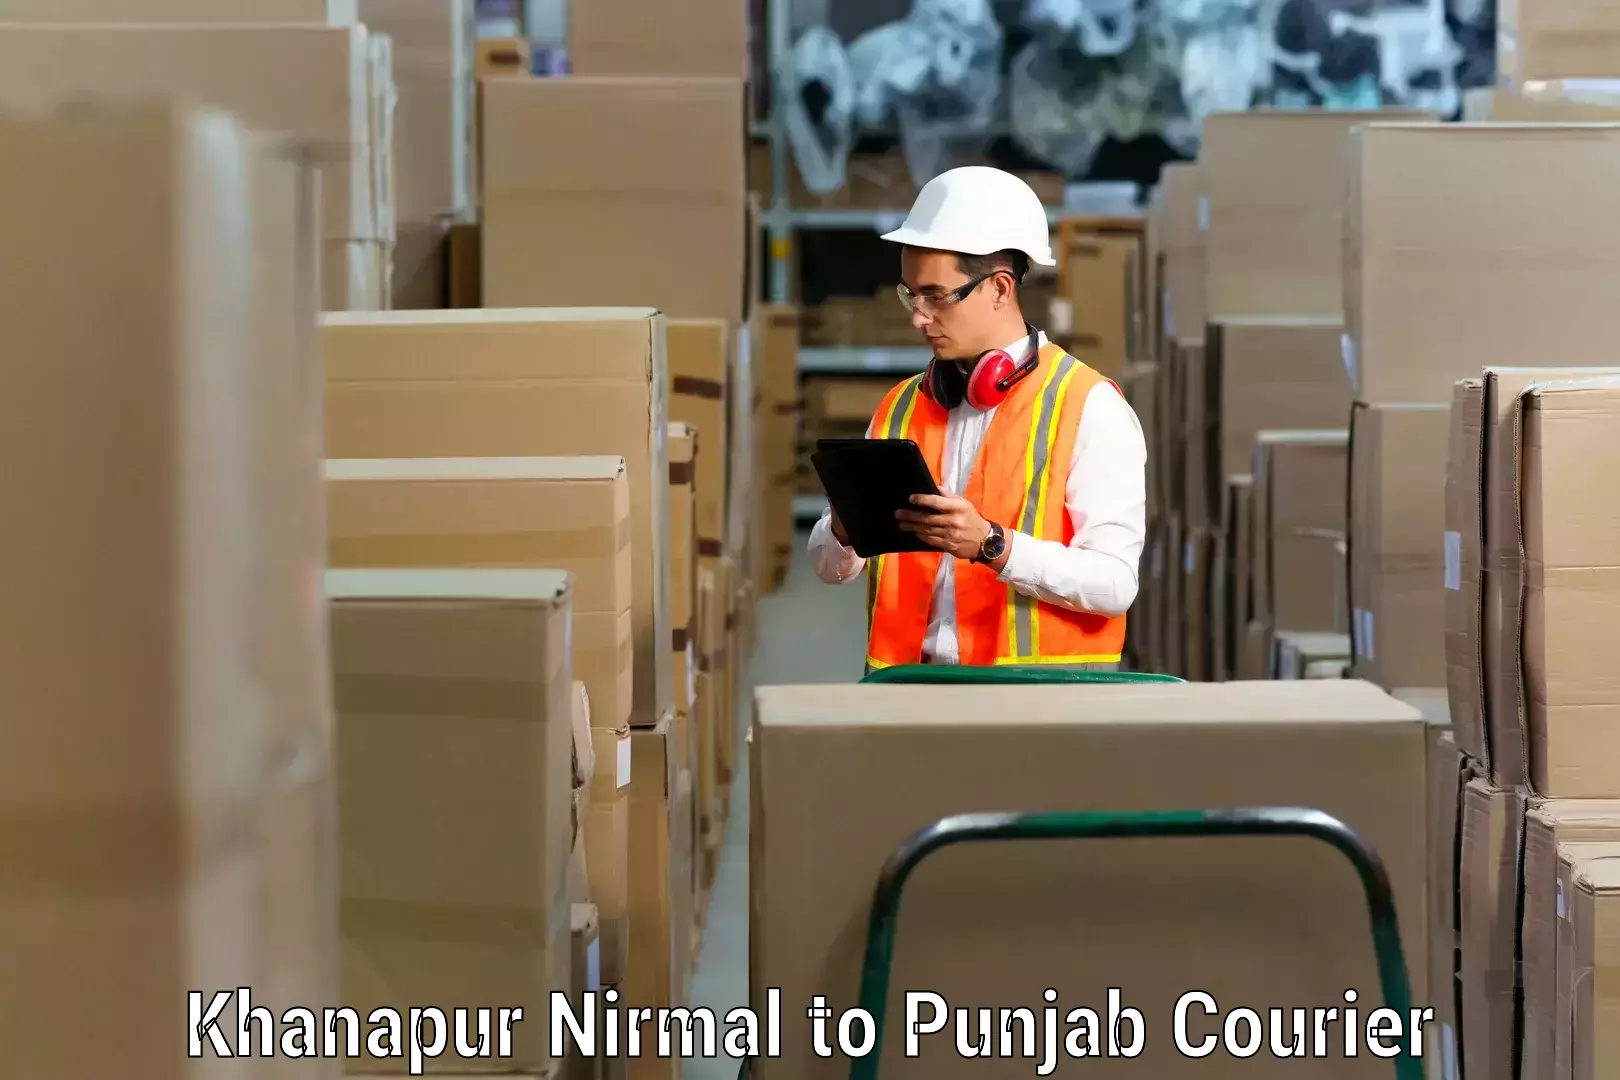 Budget-friendly moving services Khanapur Nirmal to Jhunir